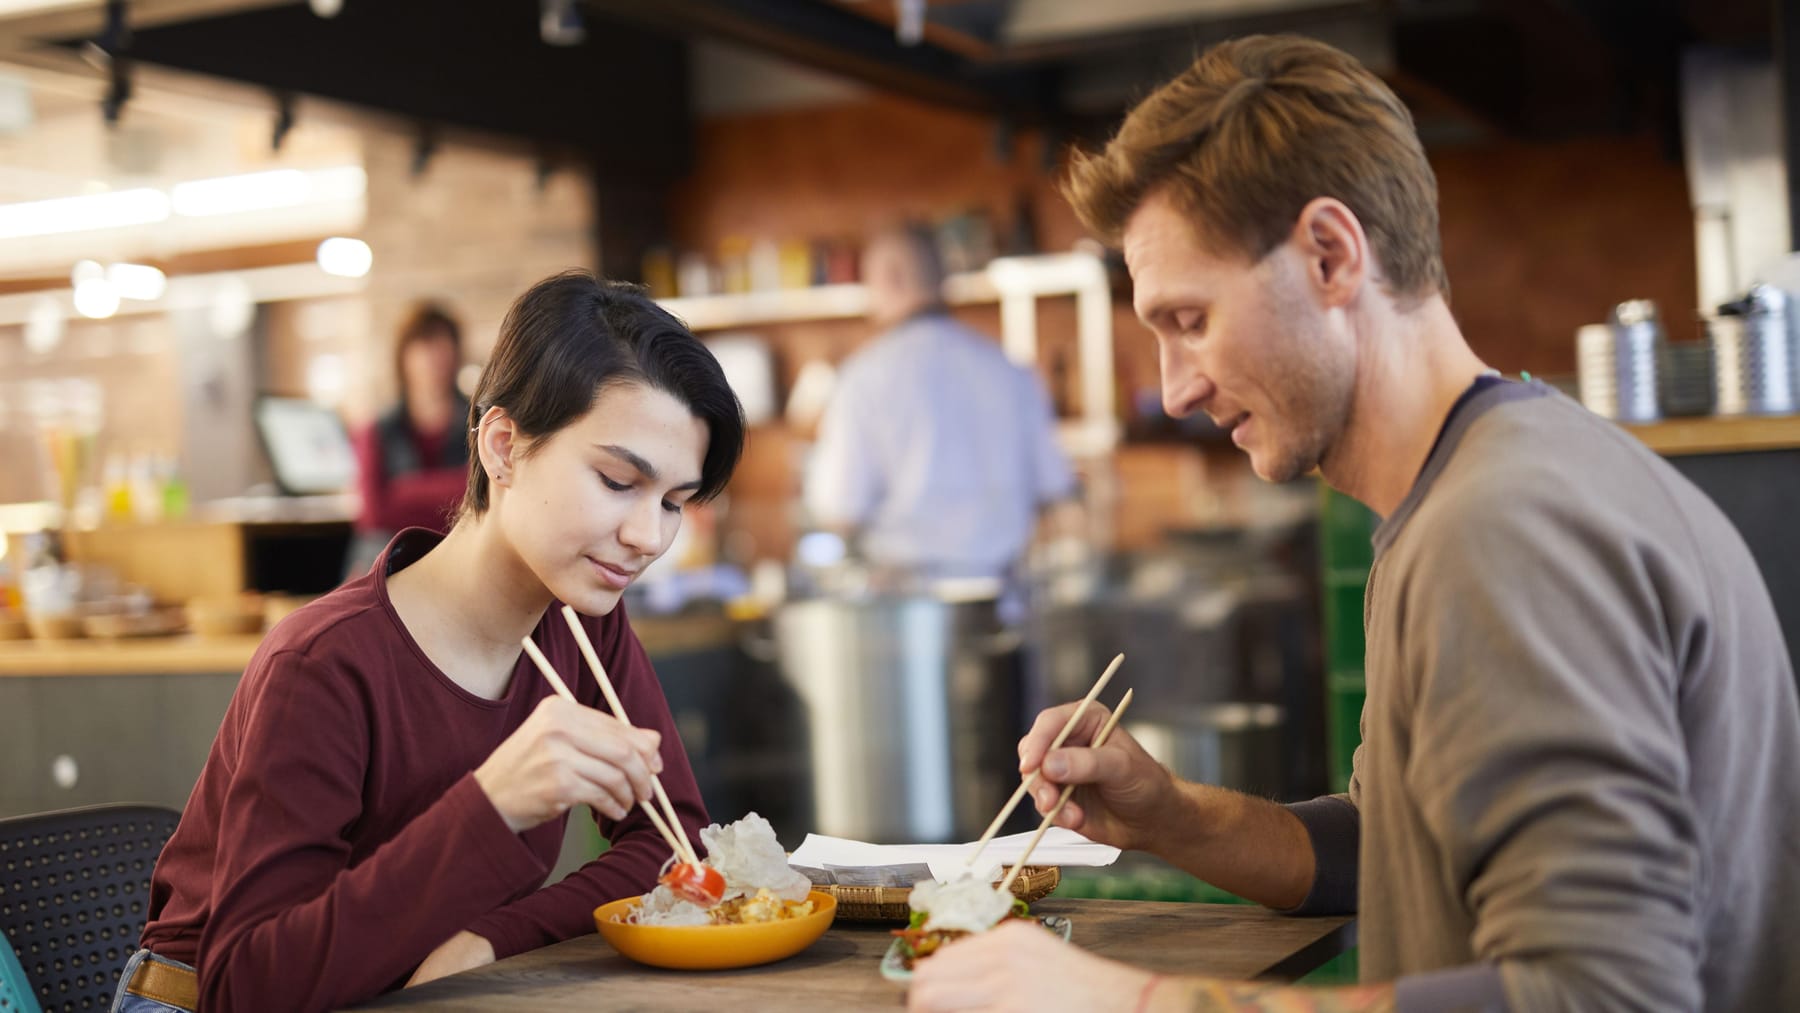 “Síndrome del restaurante chino”: ¿puede el glutamato realmente causar síntomas?